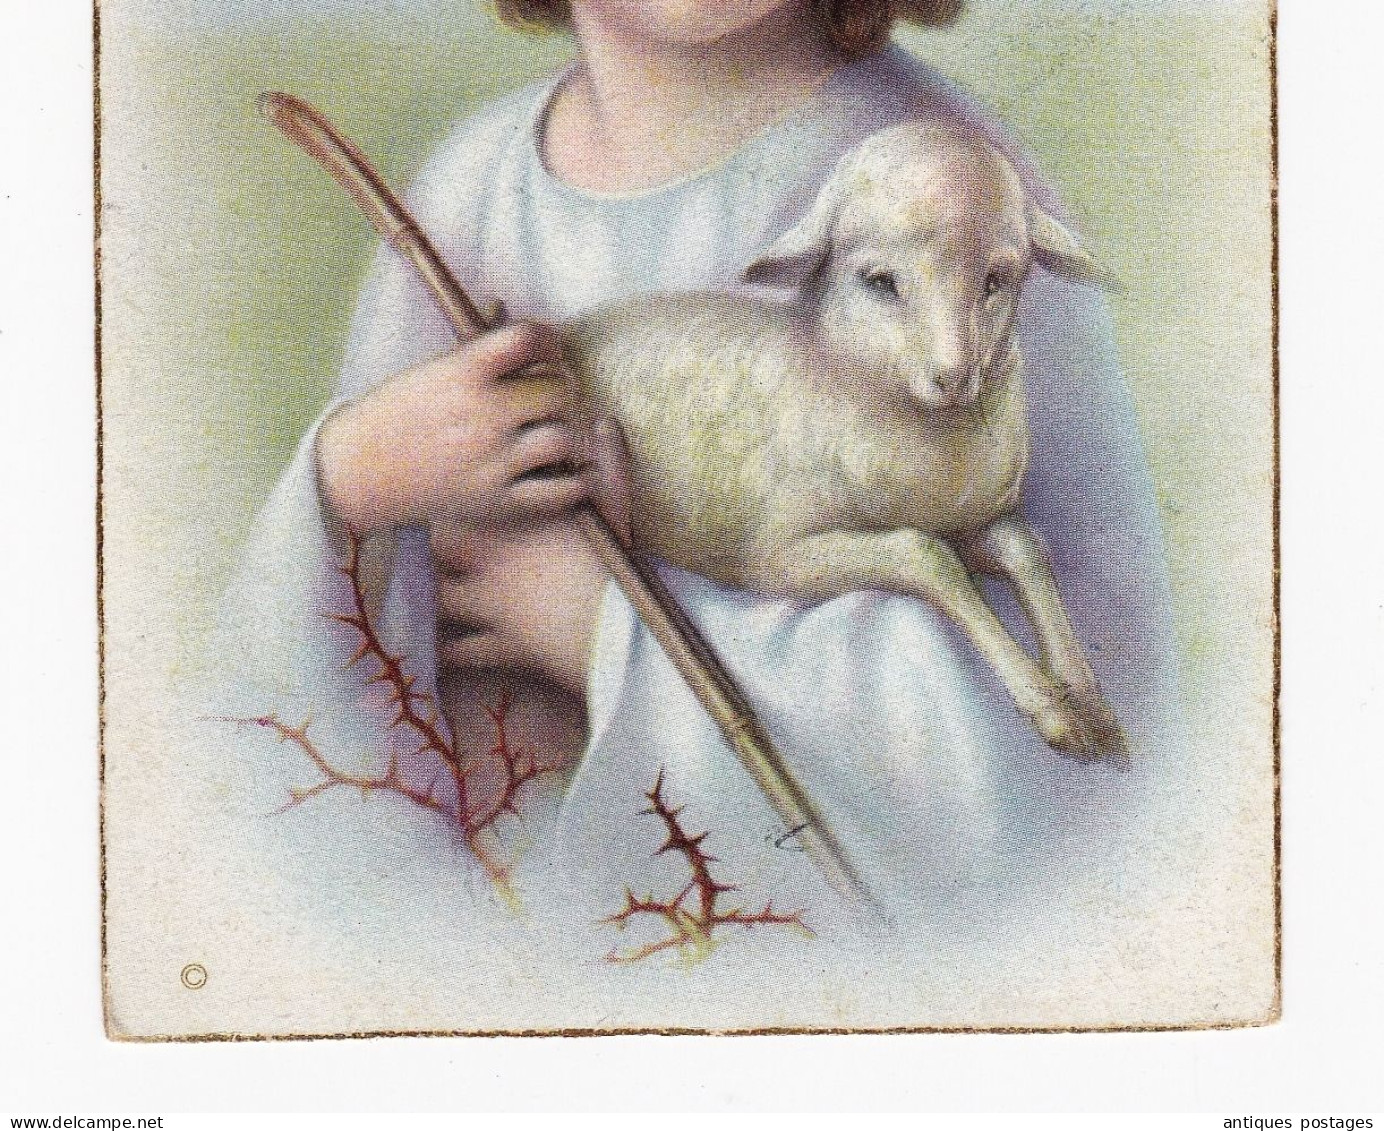 Carte Postale Tubize Tubeke Begique Waterloo Joyeuses Pâques Ostern Pascua Easter Pasqua - Easter